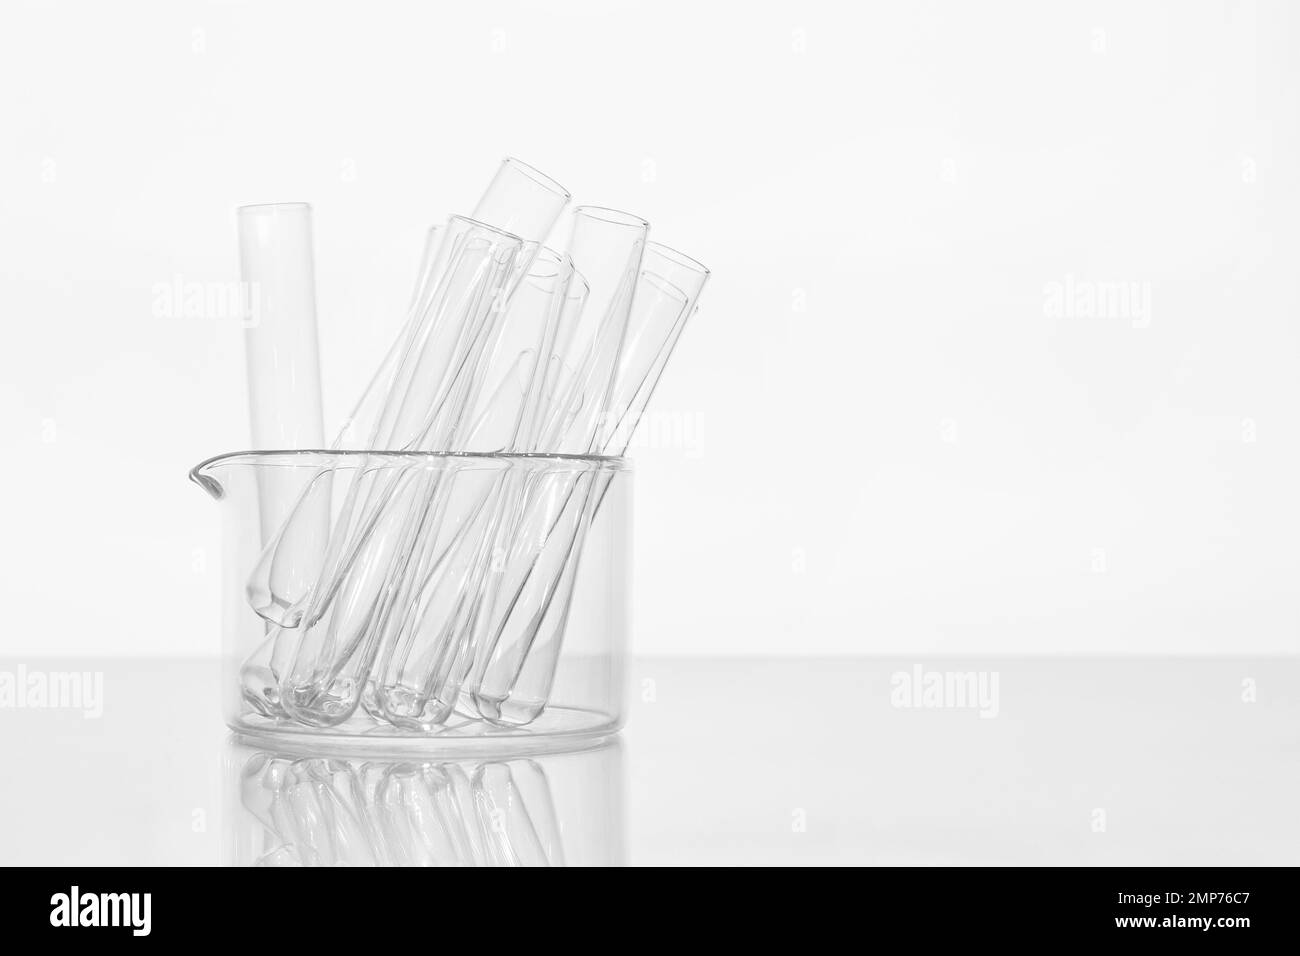 Transparente Glasröhrchen auf weißem Hintergrund, Labor, medizinische  Geräte, Glas, Chemie, biochemie, Chemielabor, Schablone, für  Stockfotografie - Alamy